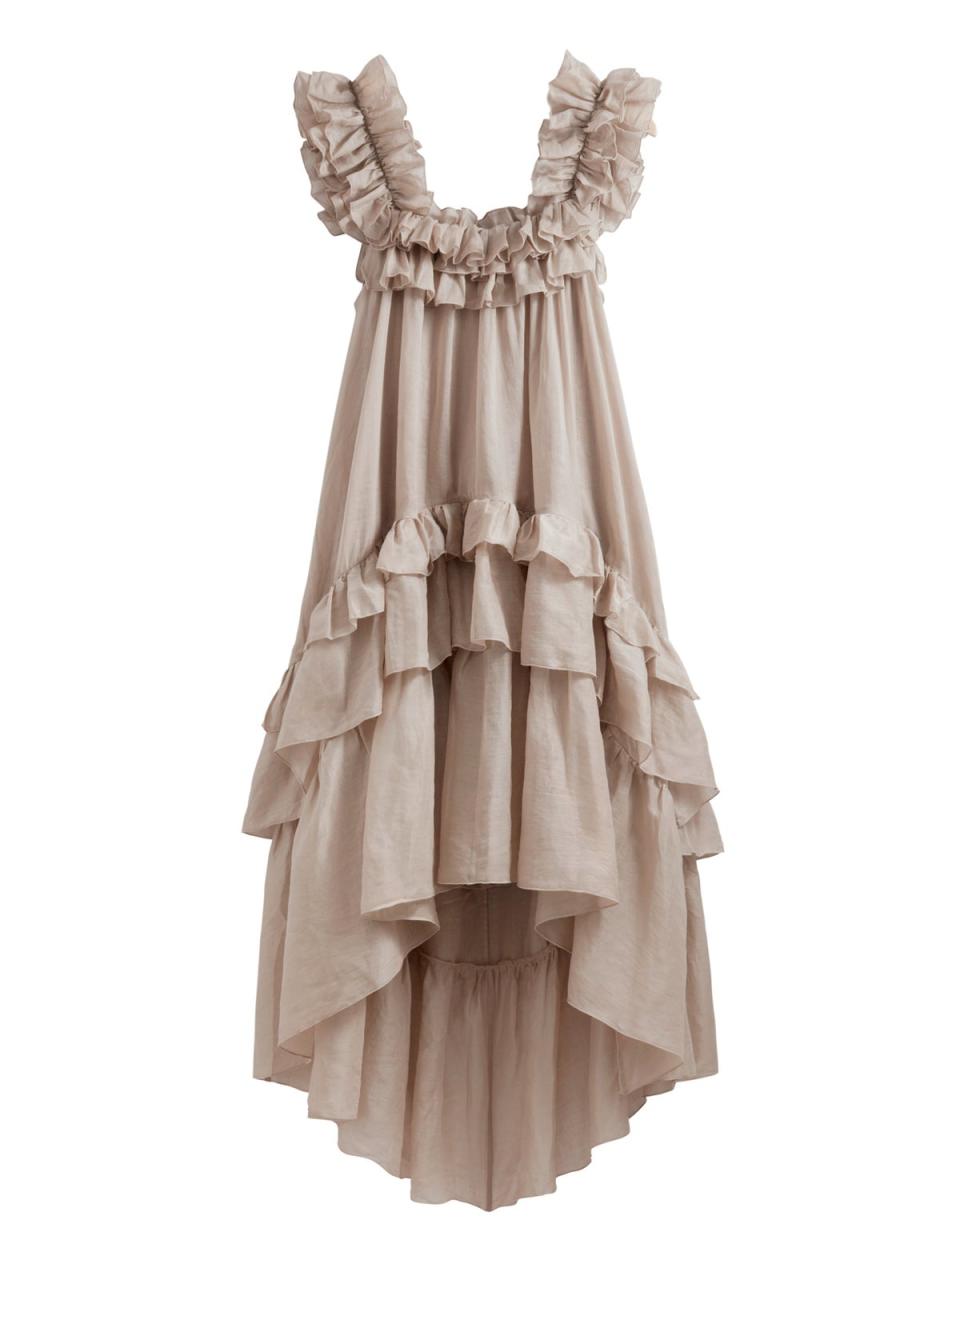 Μίντι φόρεμα με βολάν, 175 £ (stories.com) (& Άλλες ιστορίες)